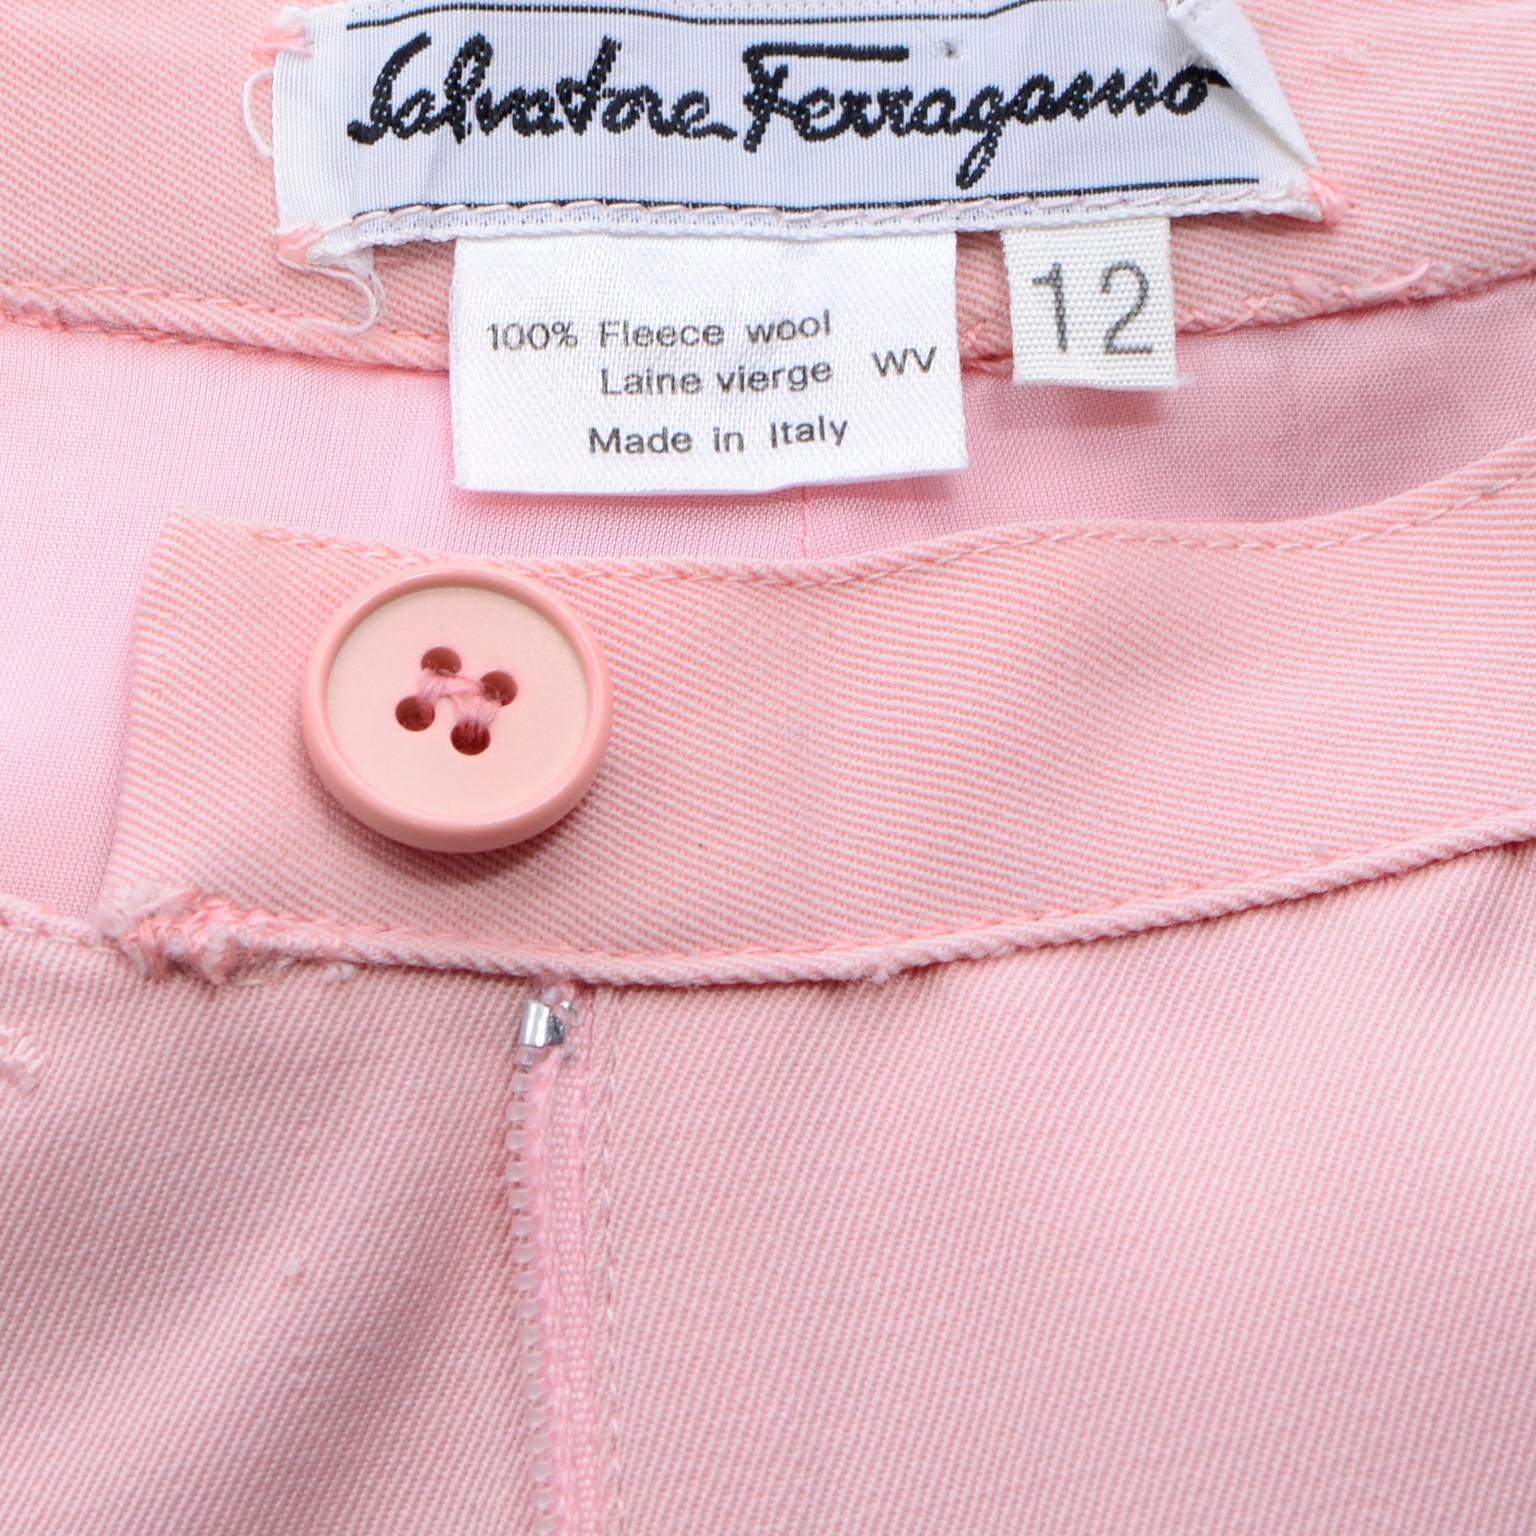 Salvatore Ferragamo Pants Pink Spring Summer Weight Wool High Waist Trousers 1